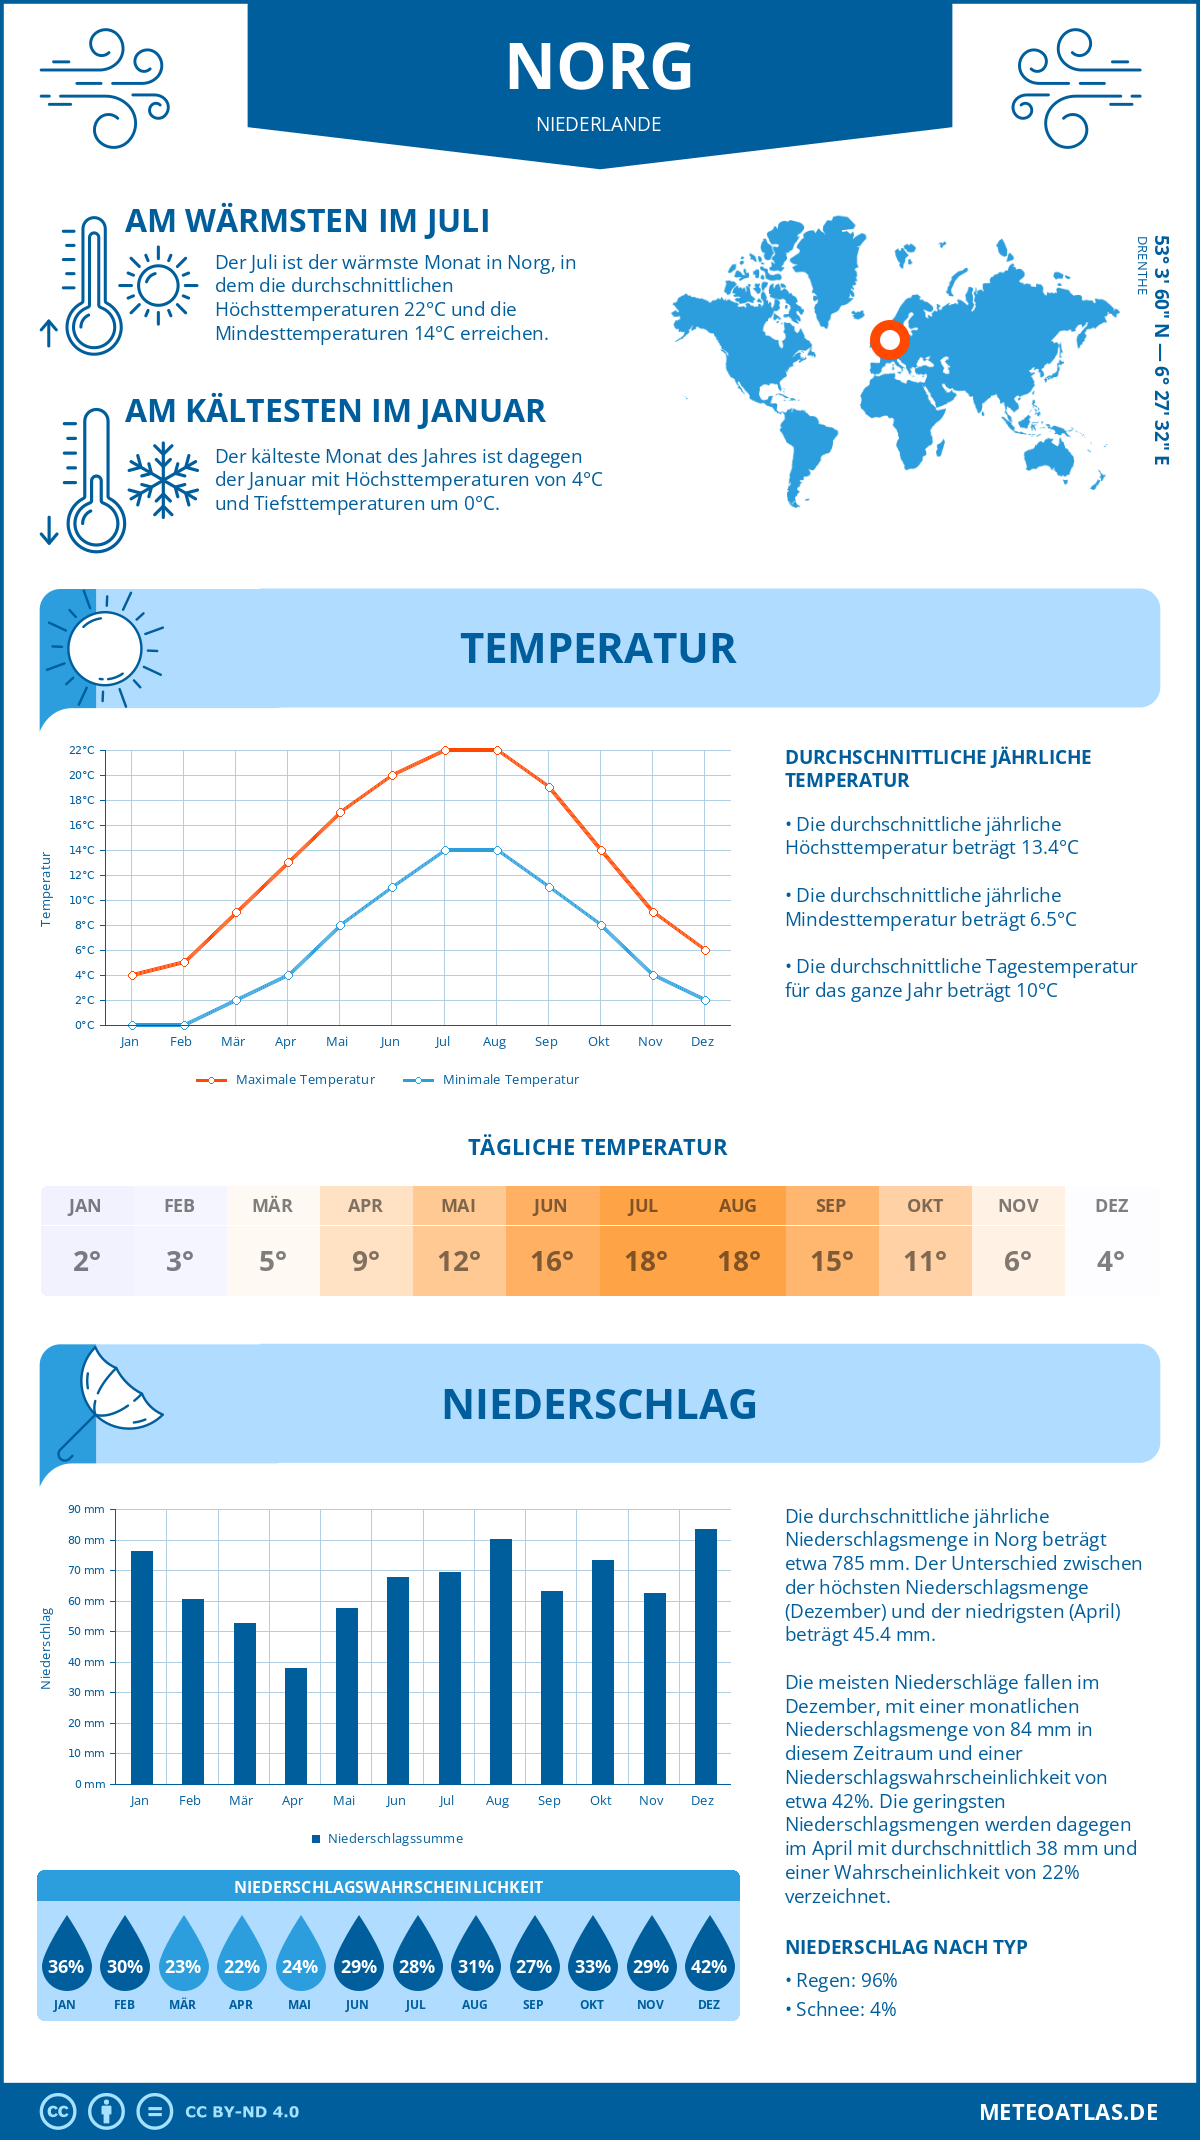 Wetter Norg (Niederlande) - Temperatur und Niederschlag